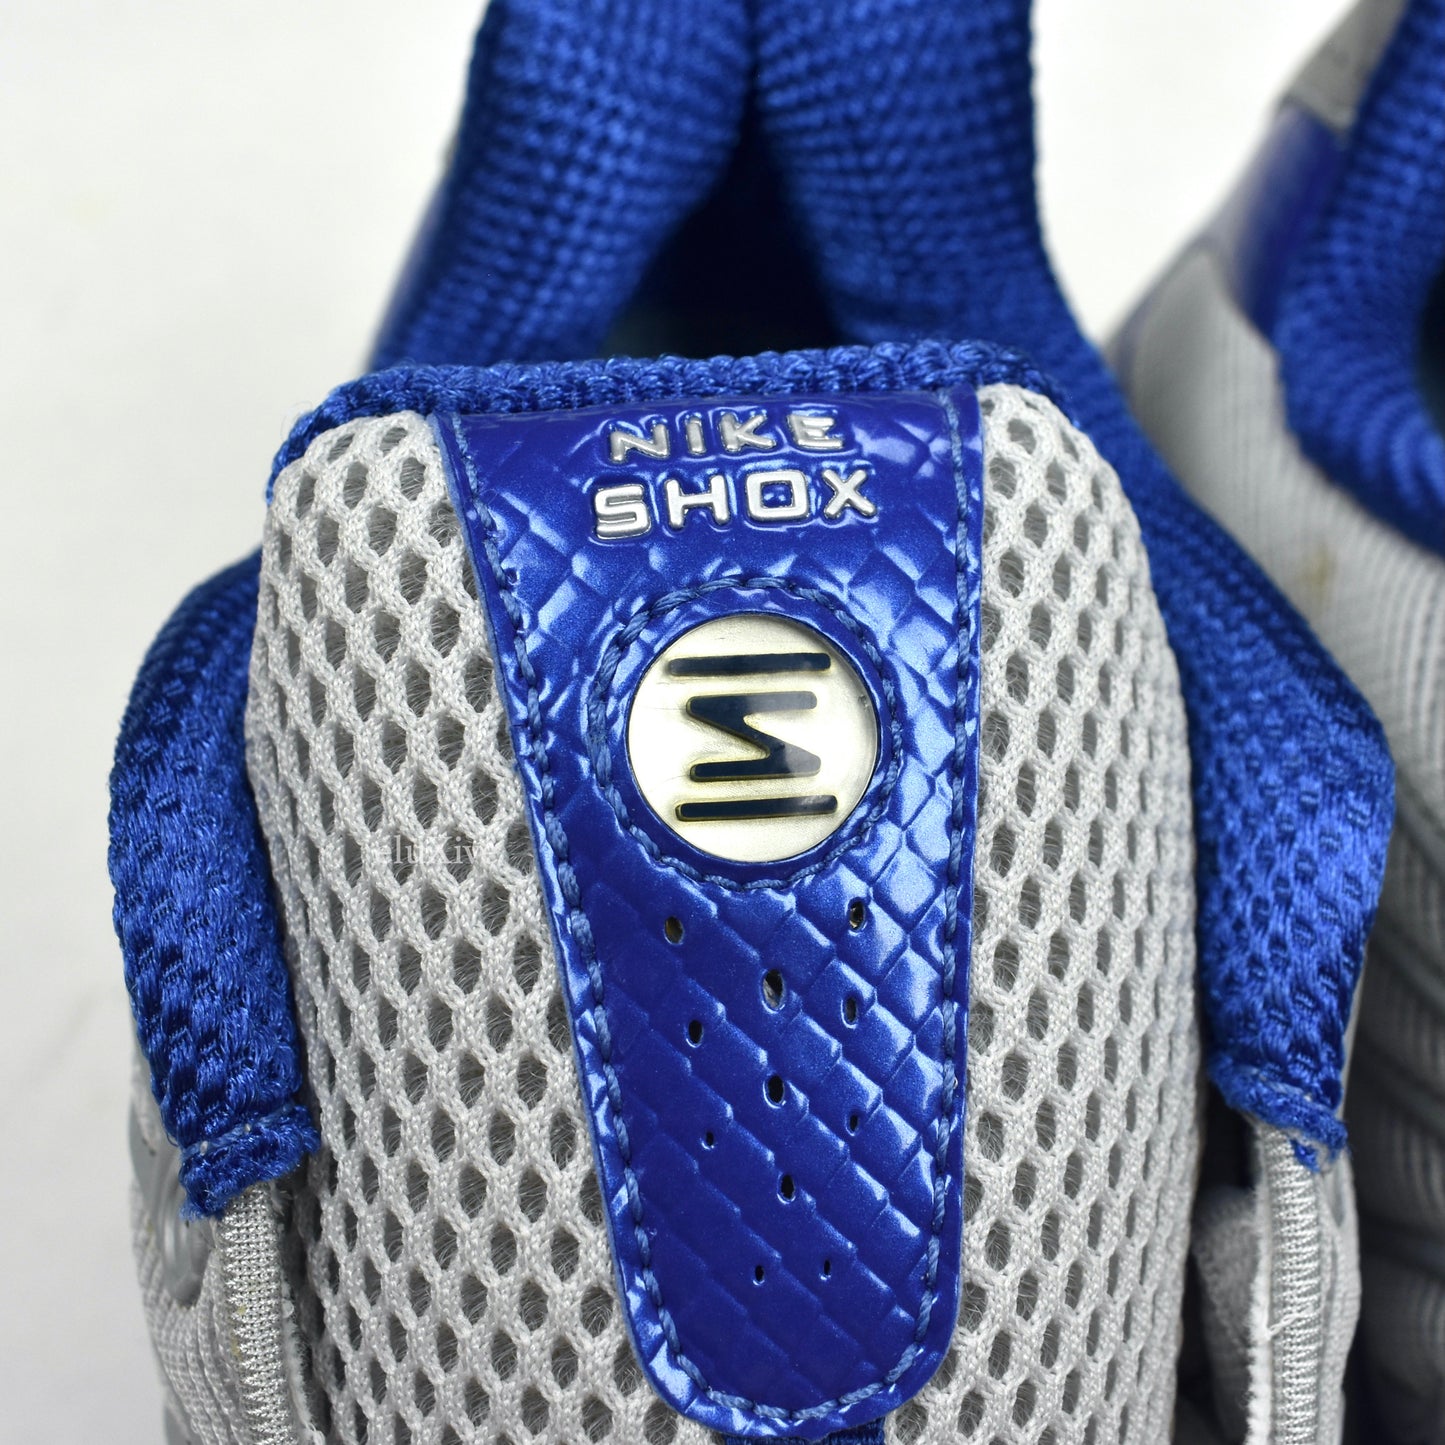 Nike - Shox Turbo OZ Gray / Atlantic Blue / Silver (2005)